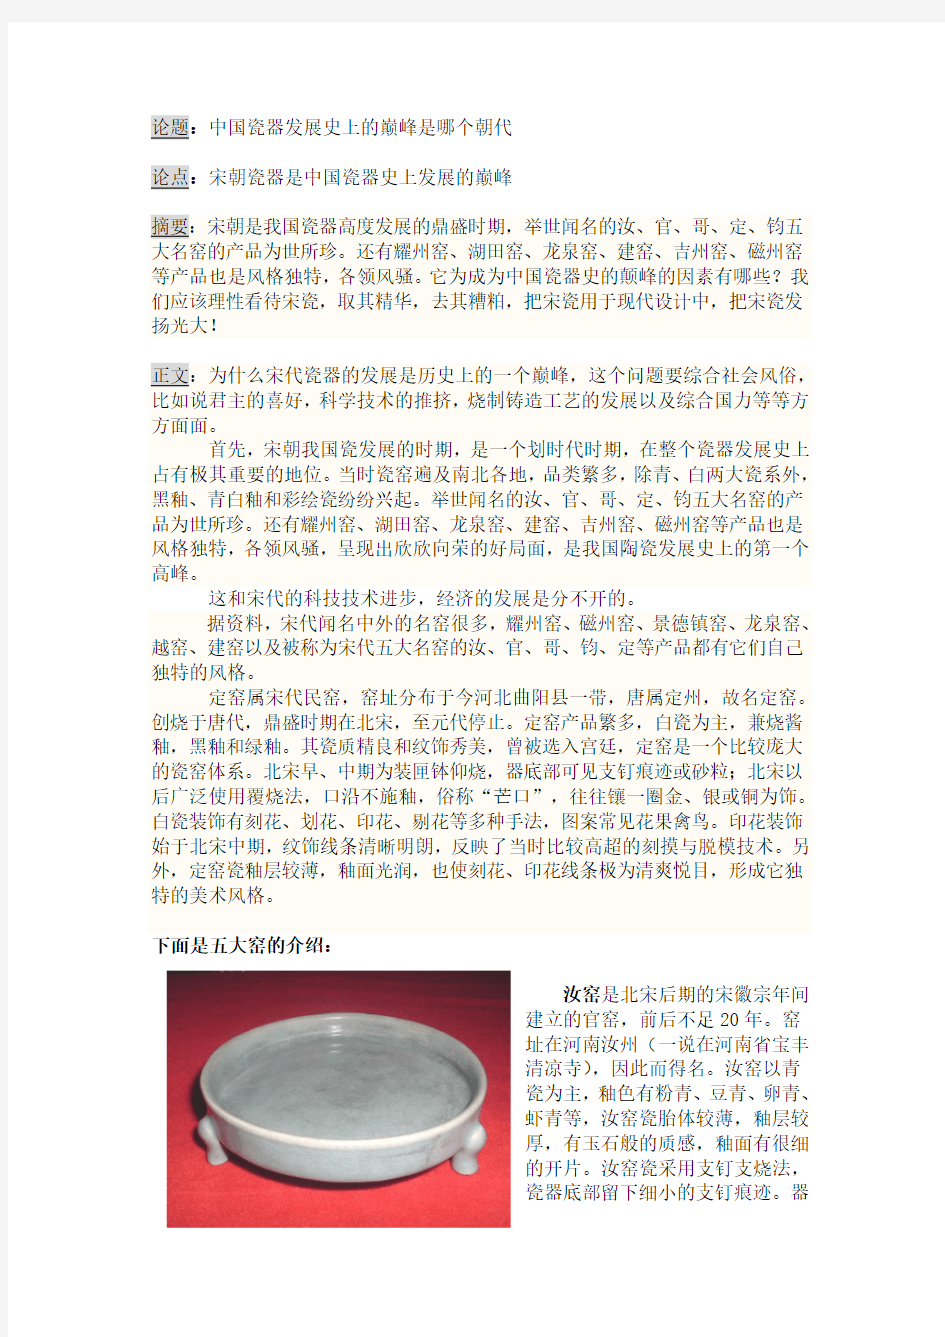 宋朝瓷器是中国瓷器史上发展的巅峰